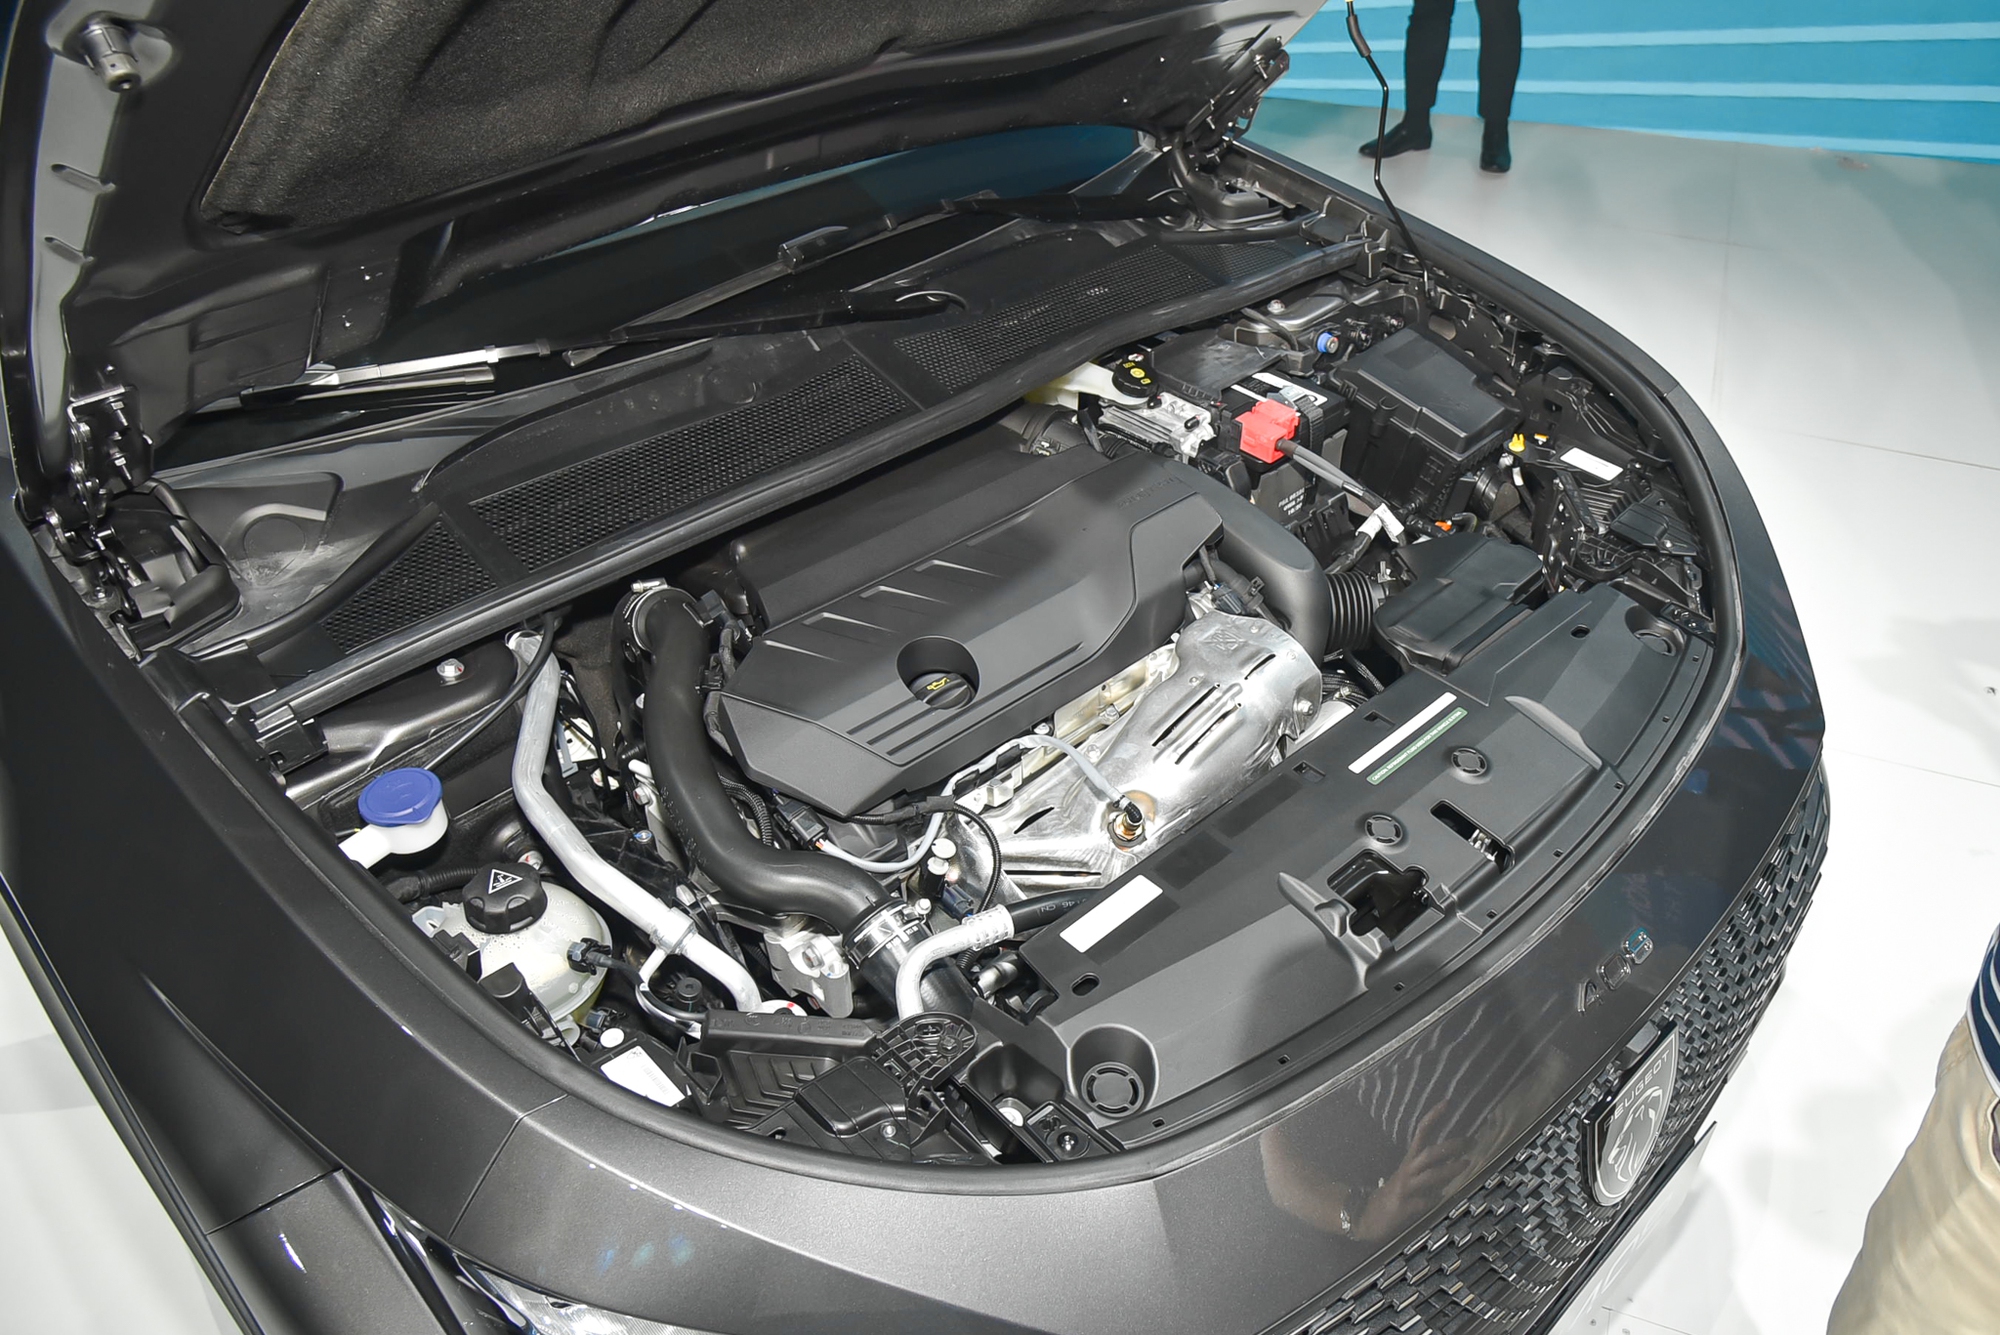 Chi tiết Peugeot 408 bản tiêu chuẩn giá 999 triệu đồng: Rẻ hơn bản cao nhất 250 triệu, vẫn có hỗ trợ người lái - Ảnh 15.